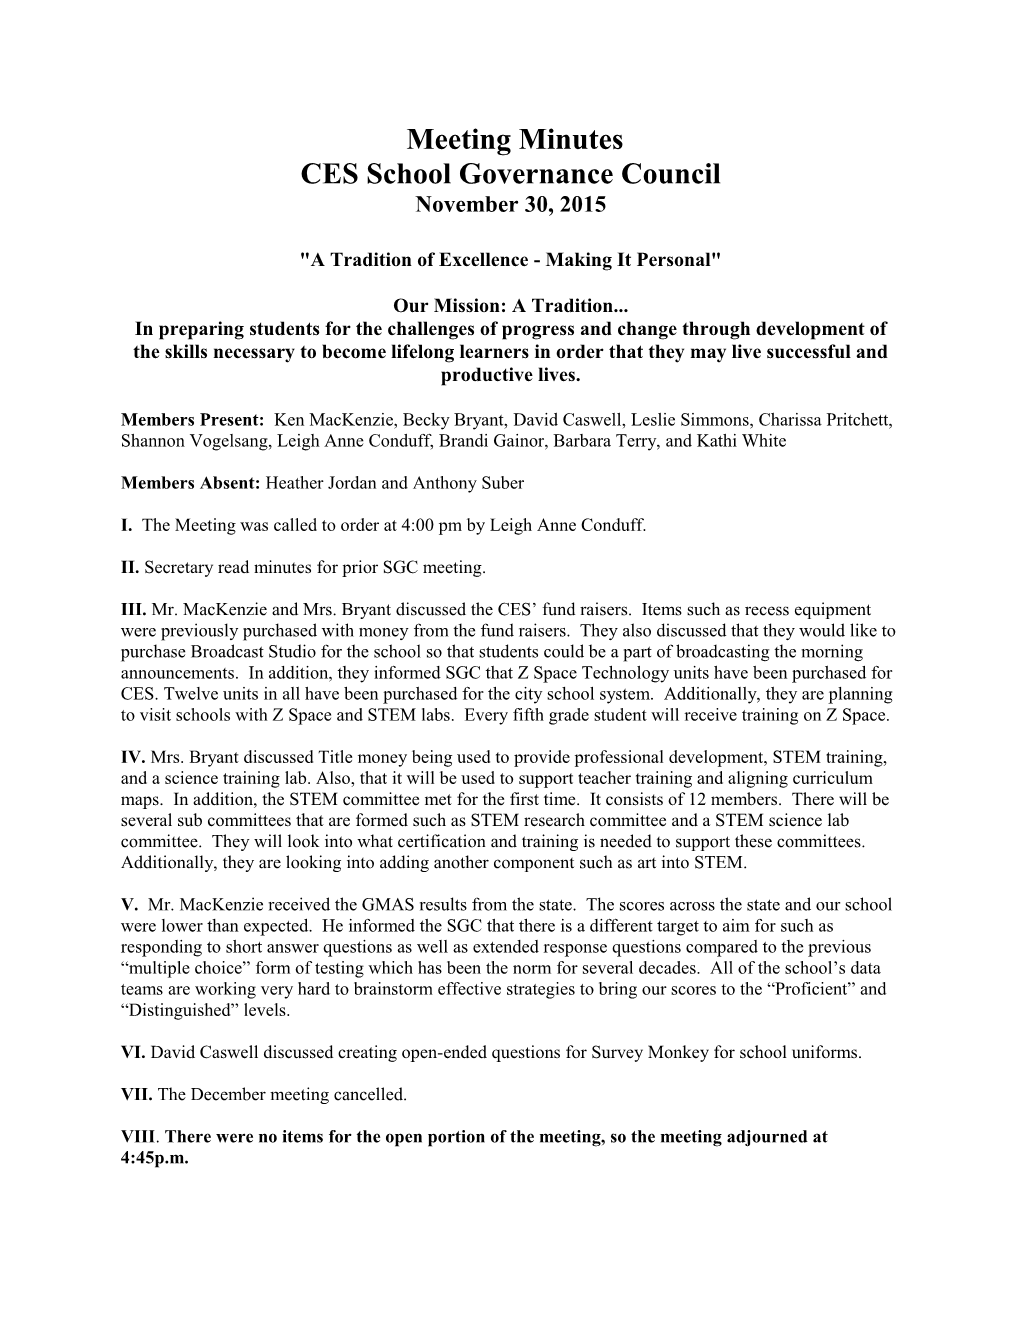 CES School Governance Council